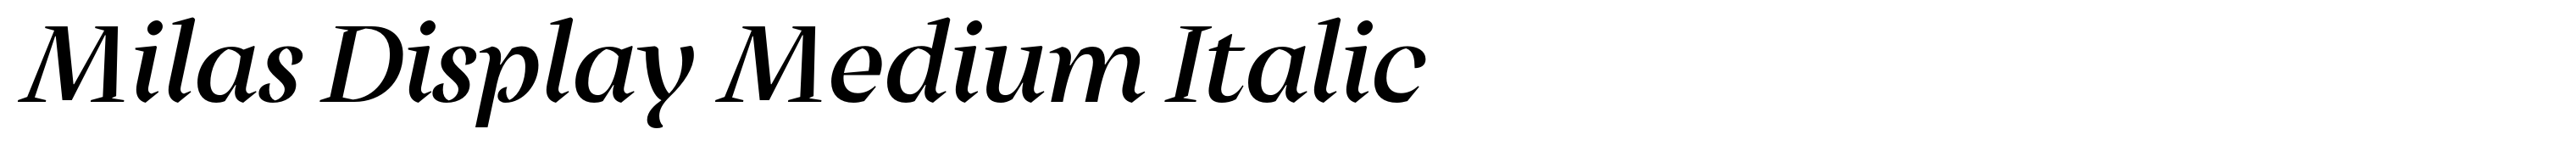 Milas Display Medium Italic